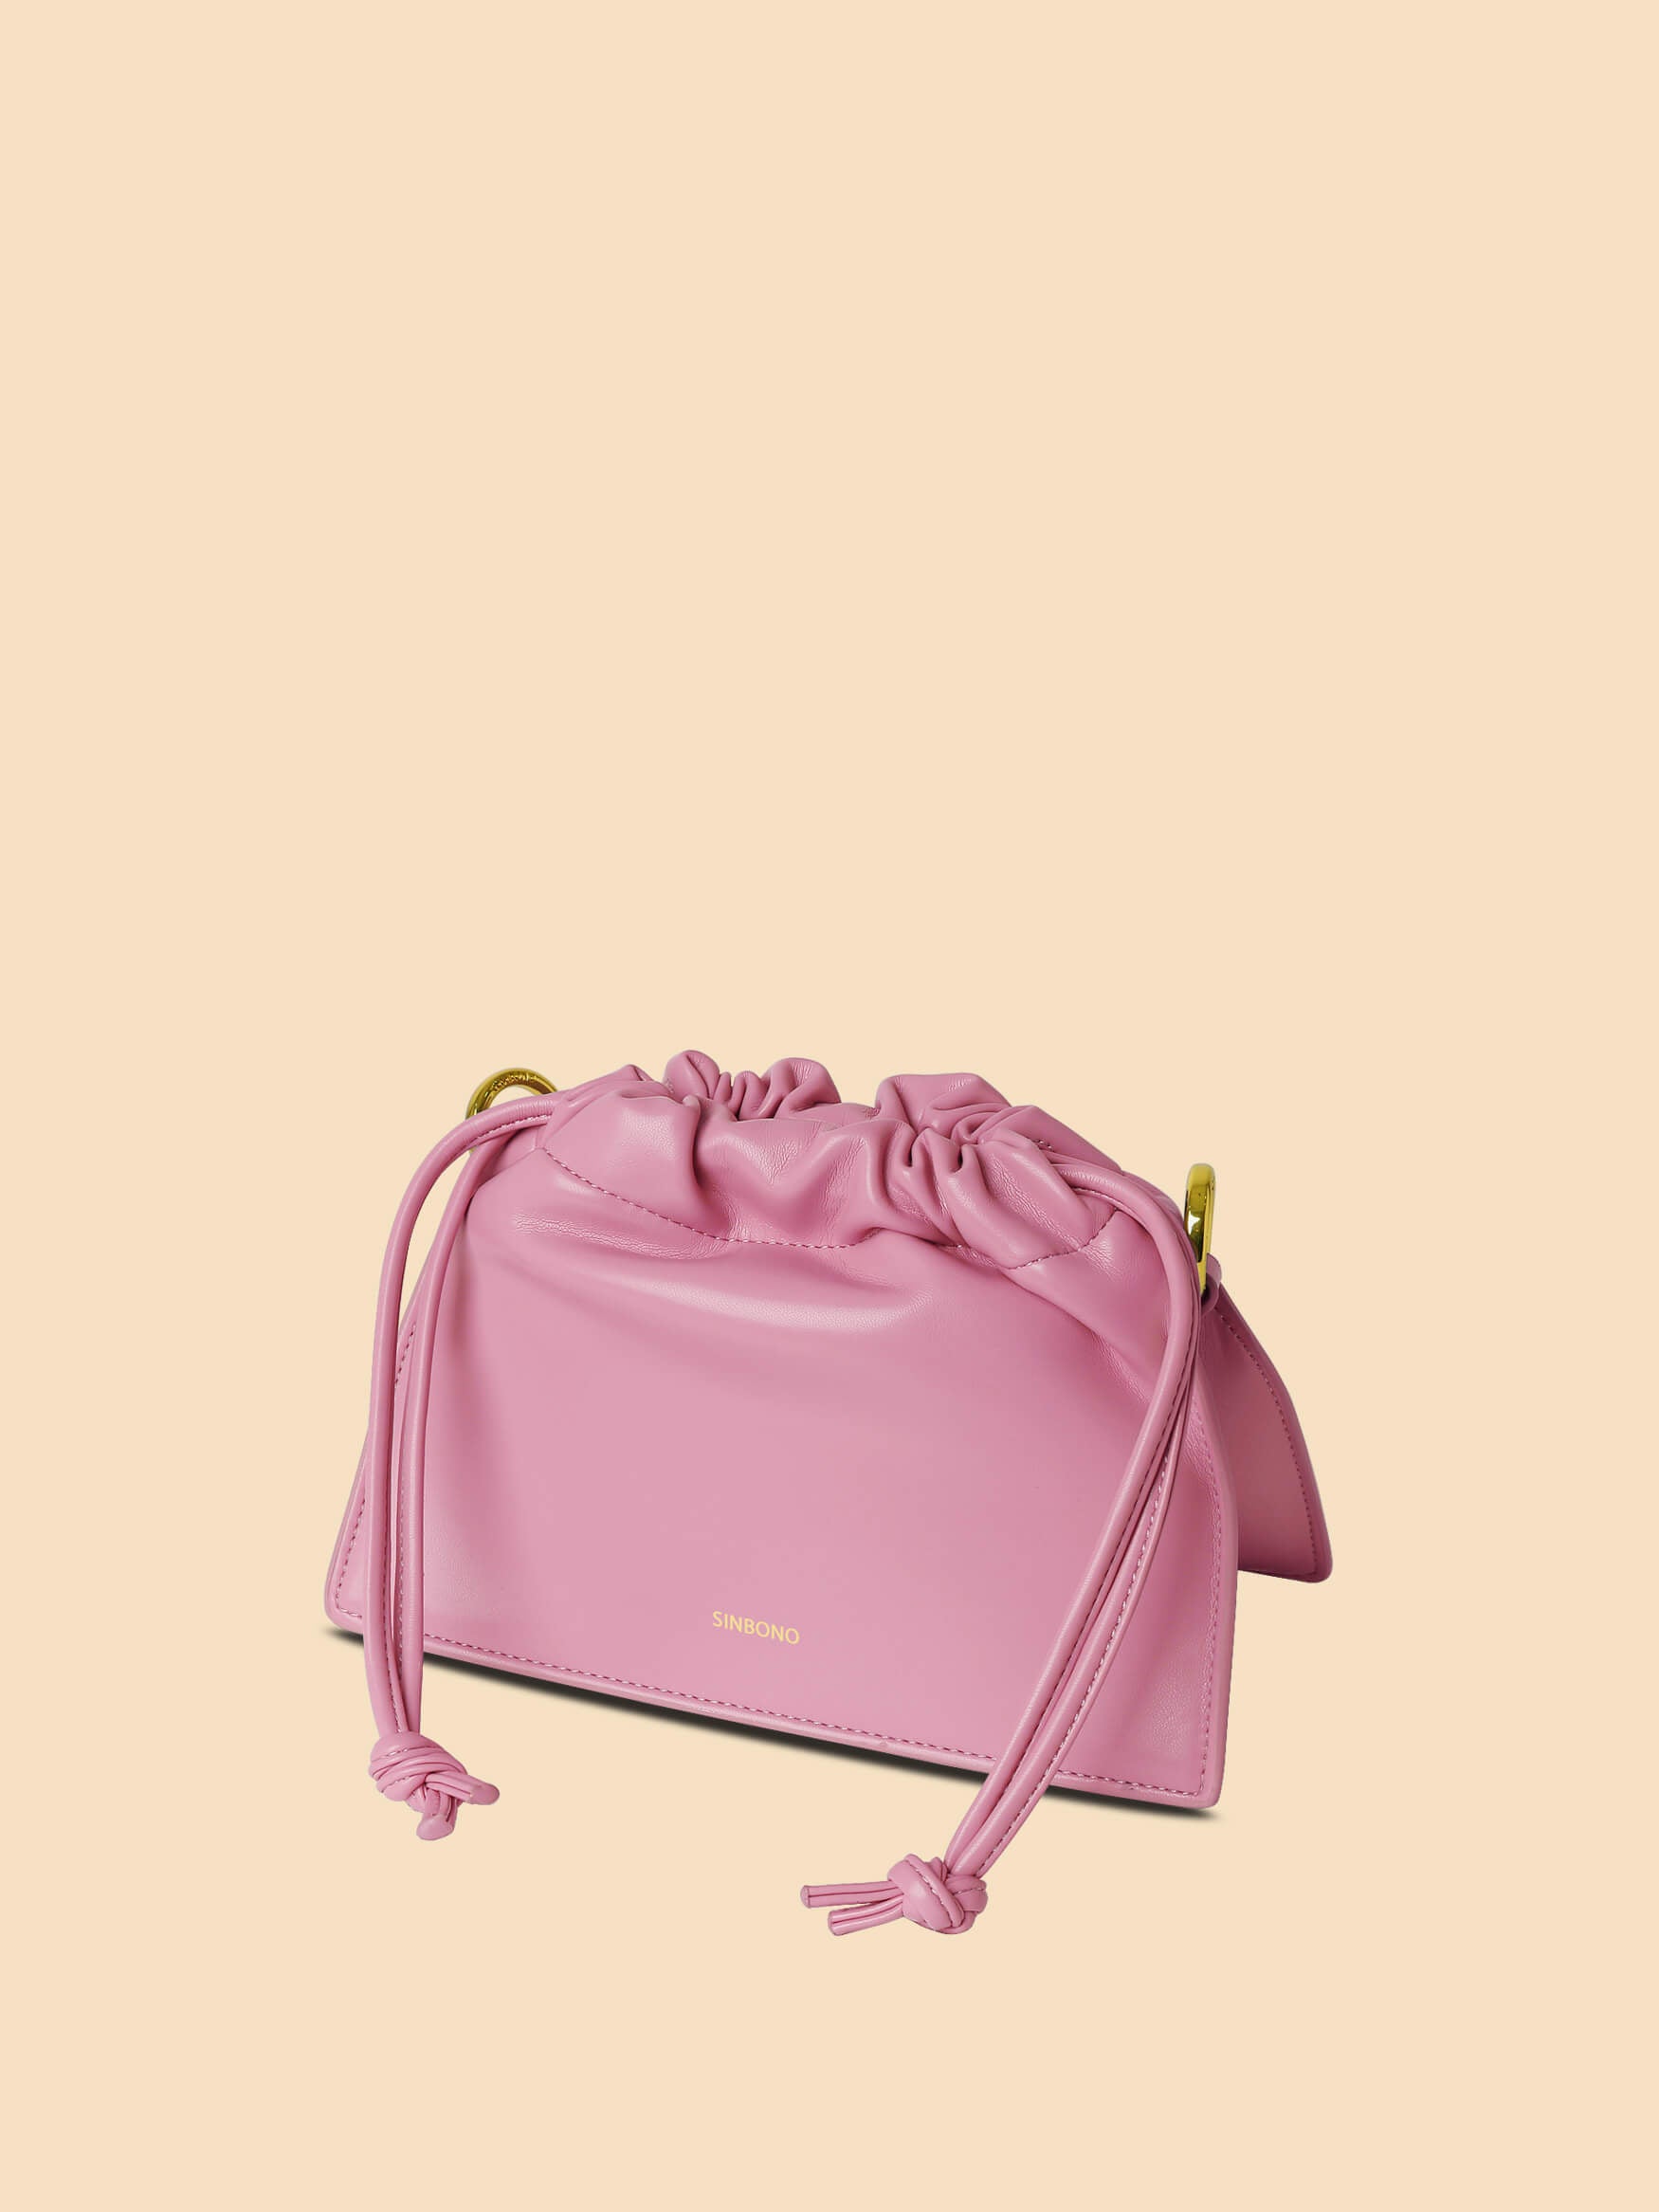 SINBONO Drawstring Handbag Pink